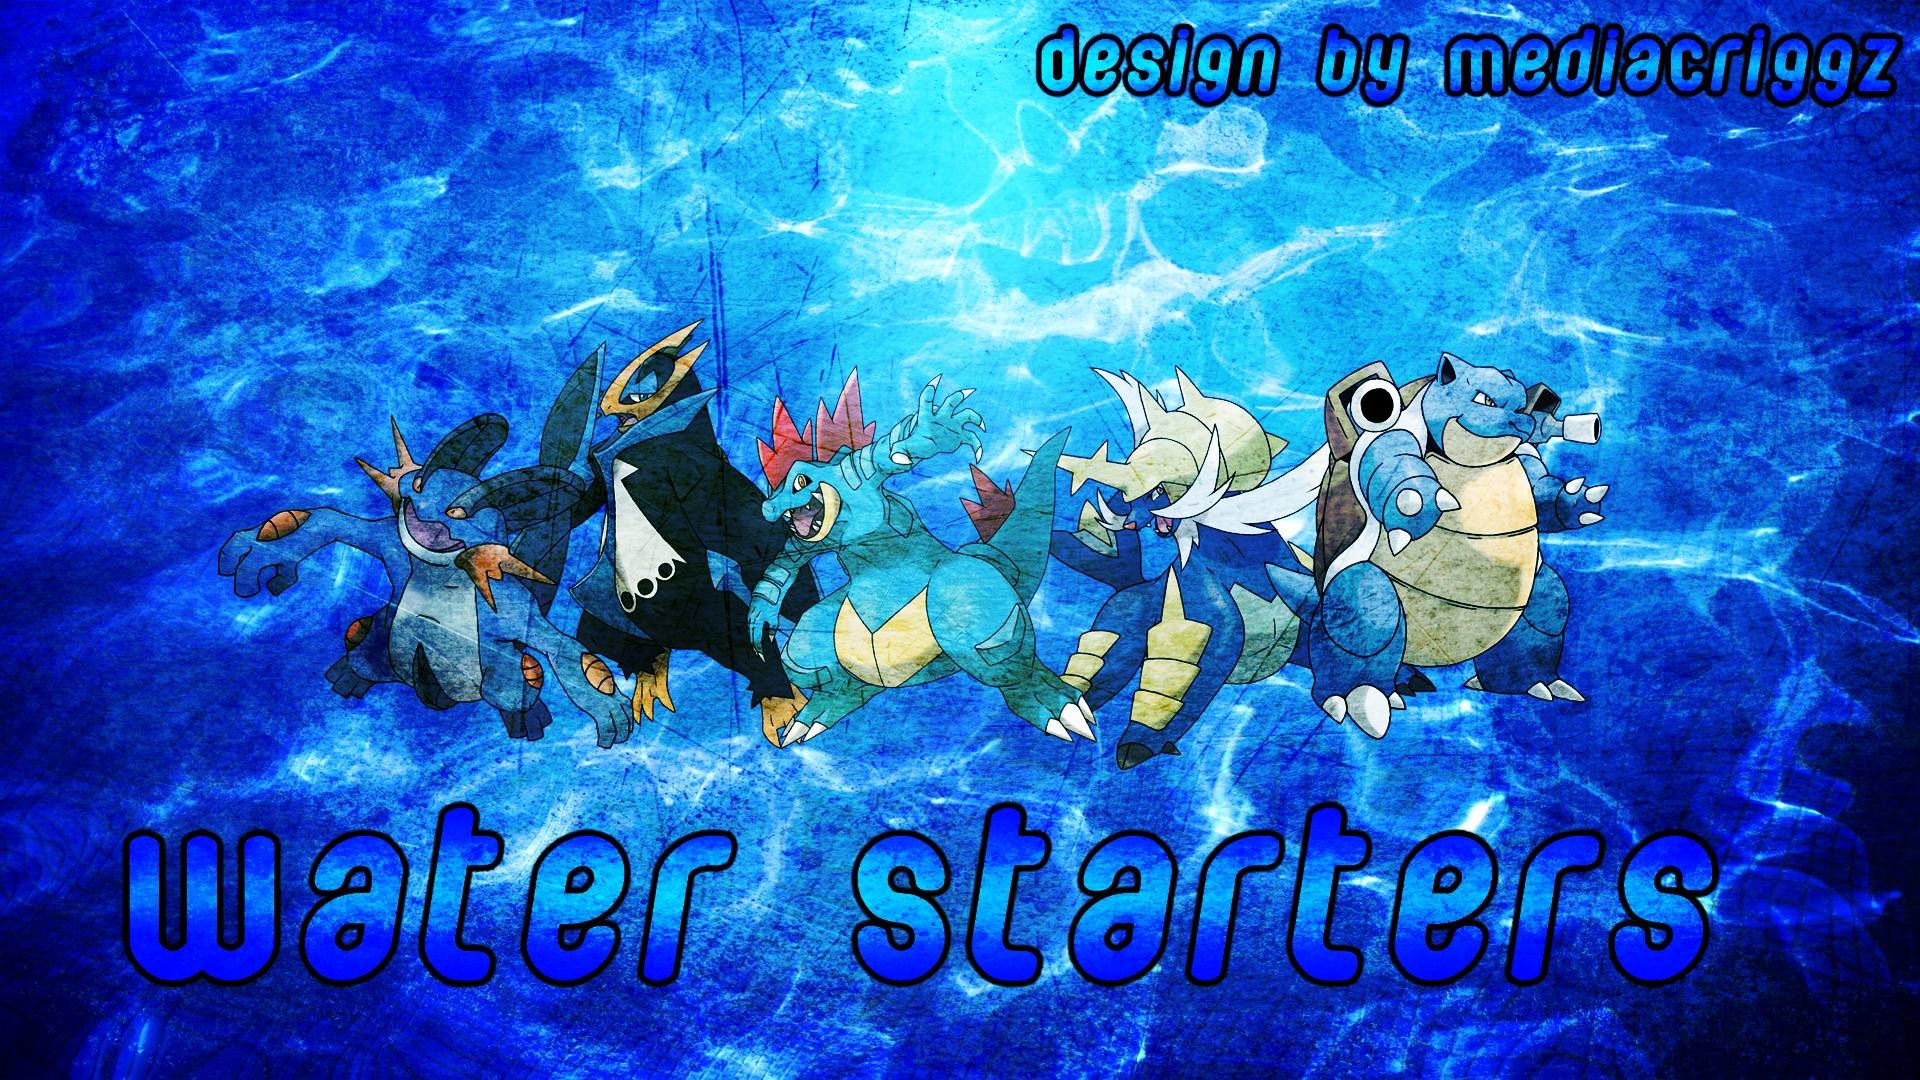 Pokemon Water Starters Wallpaper by MediaCriggz on DeviantArt